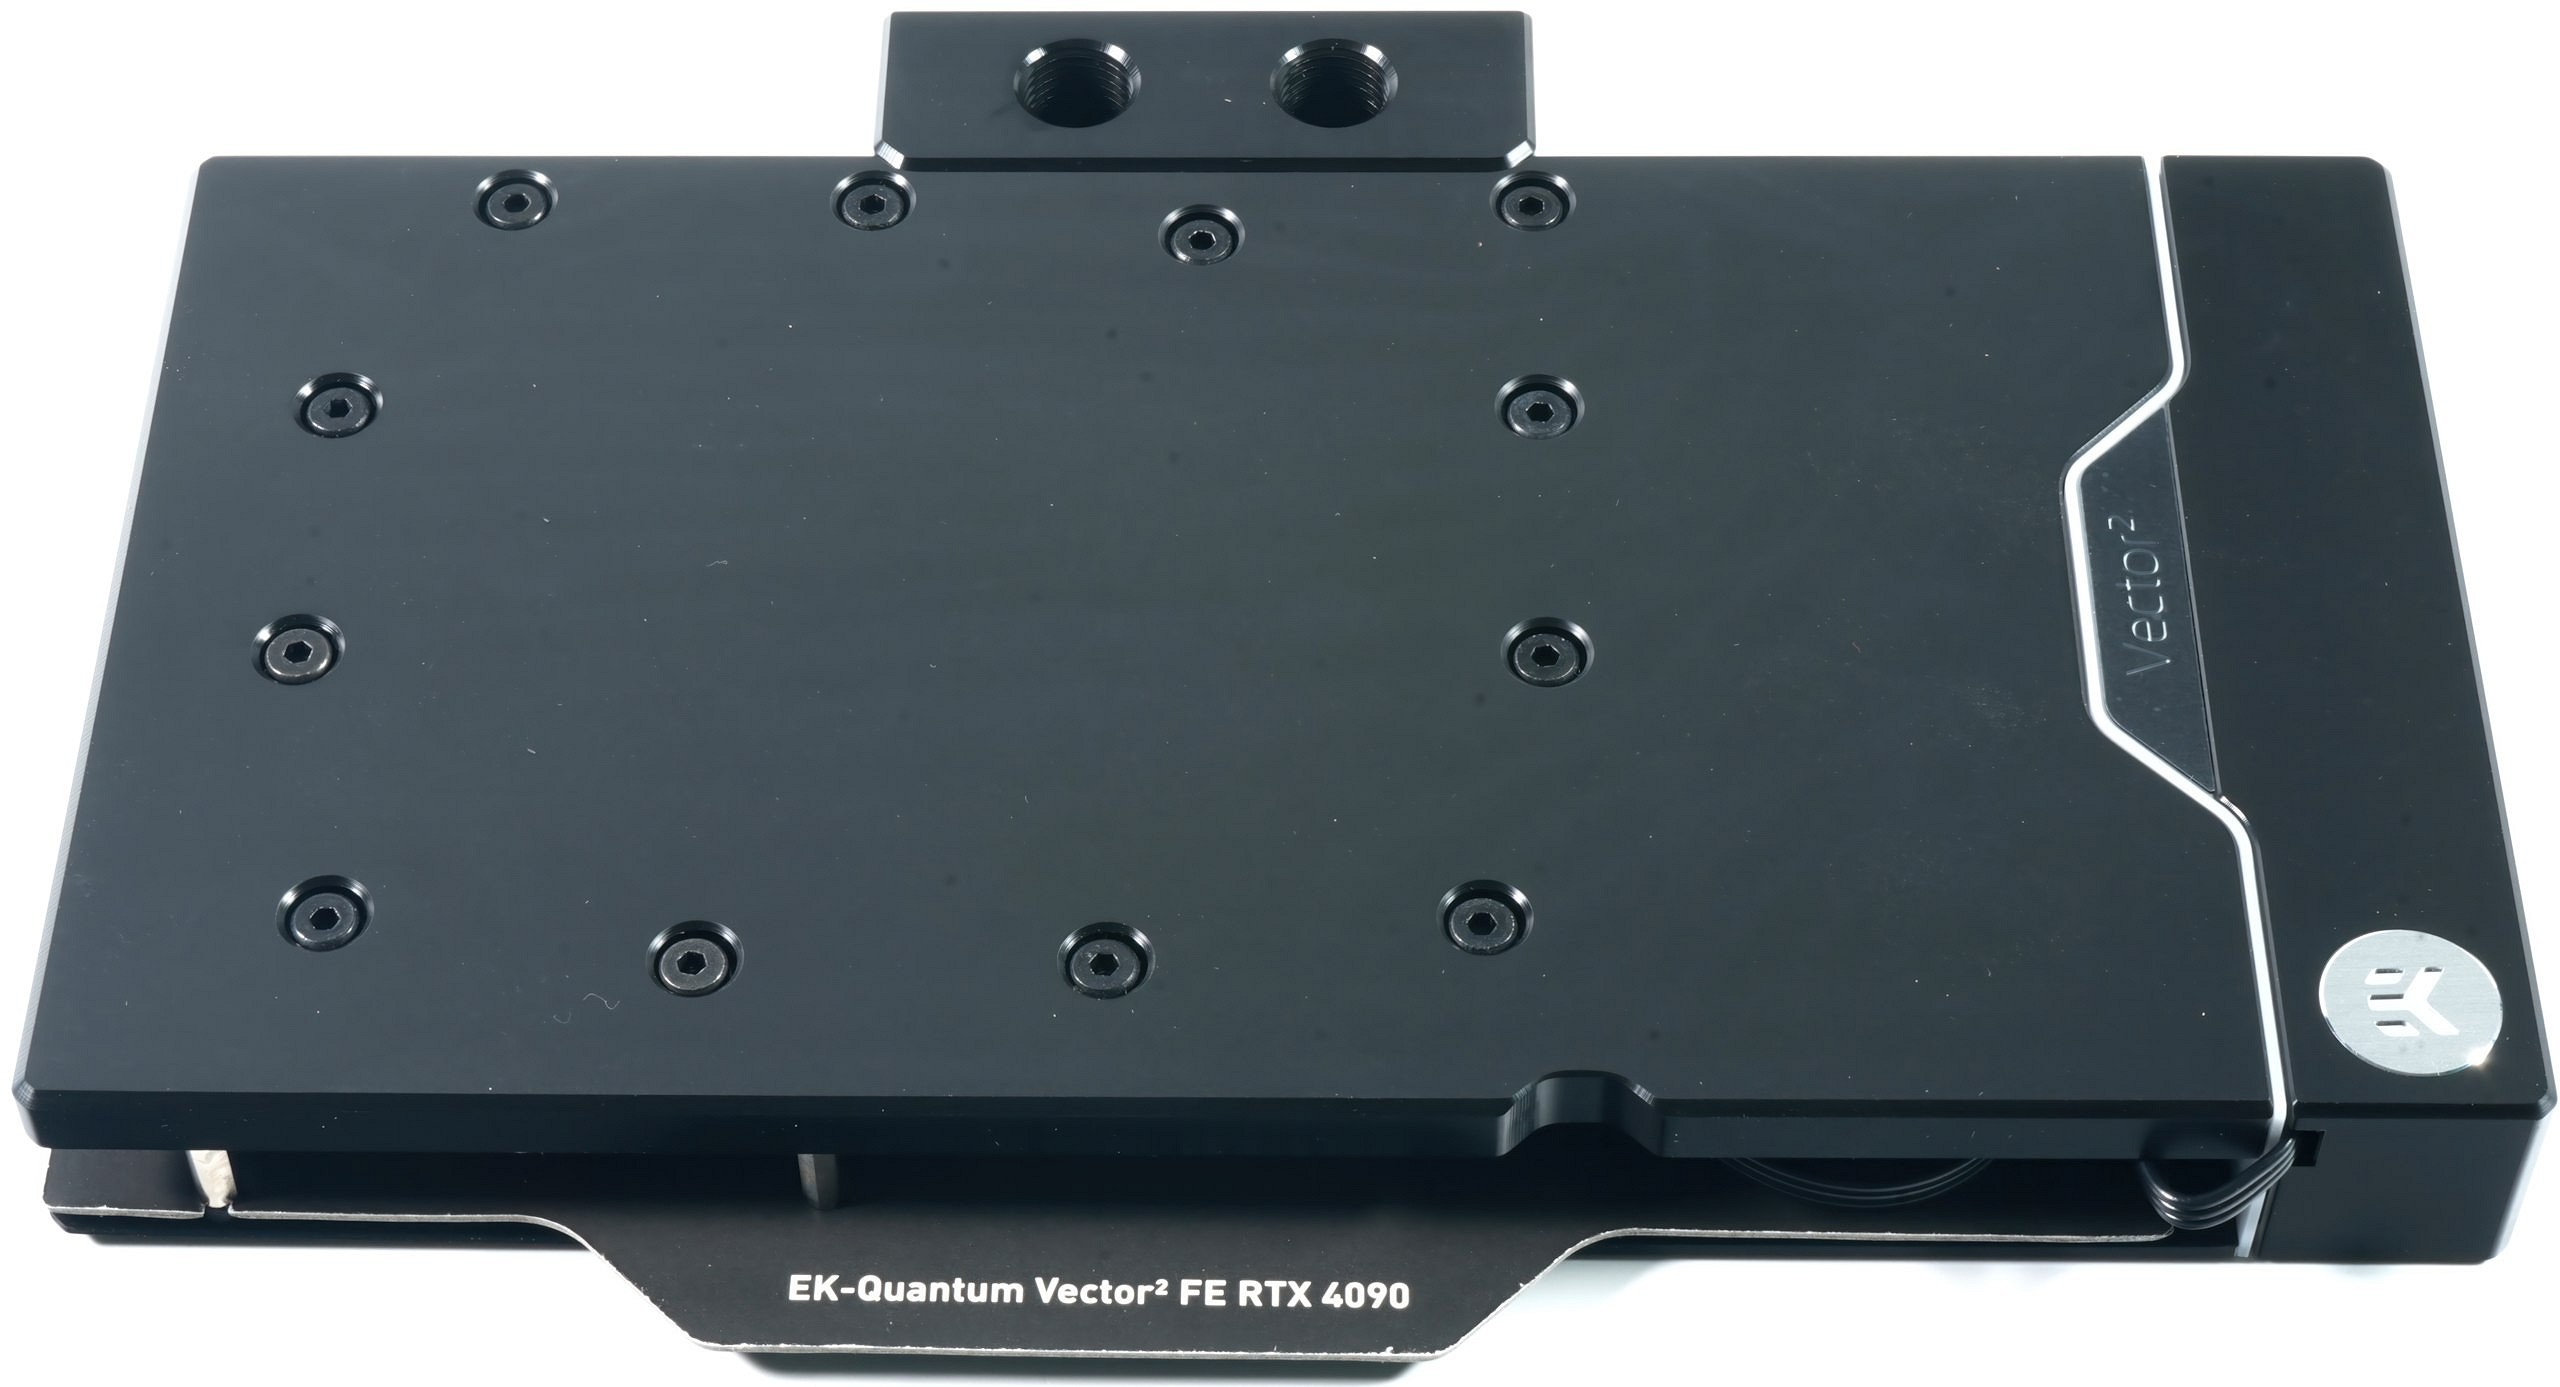 EK Quantum Vector2 FE RTX 4090 D-RGB GPU Water Block Review - Acetal ...